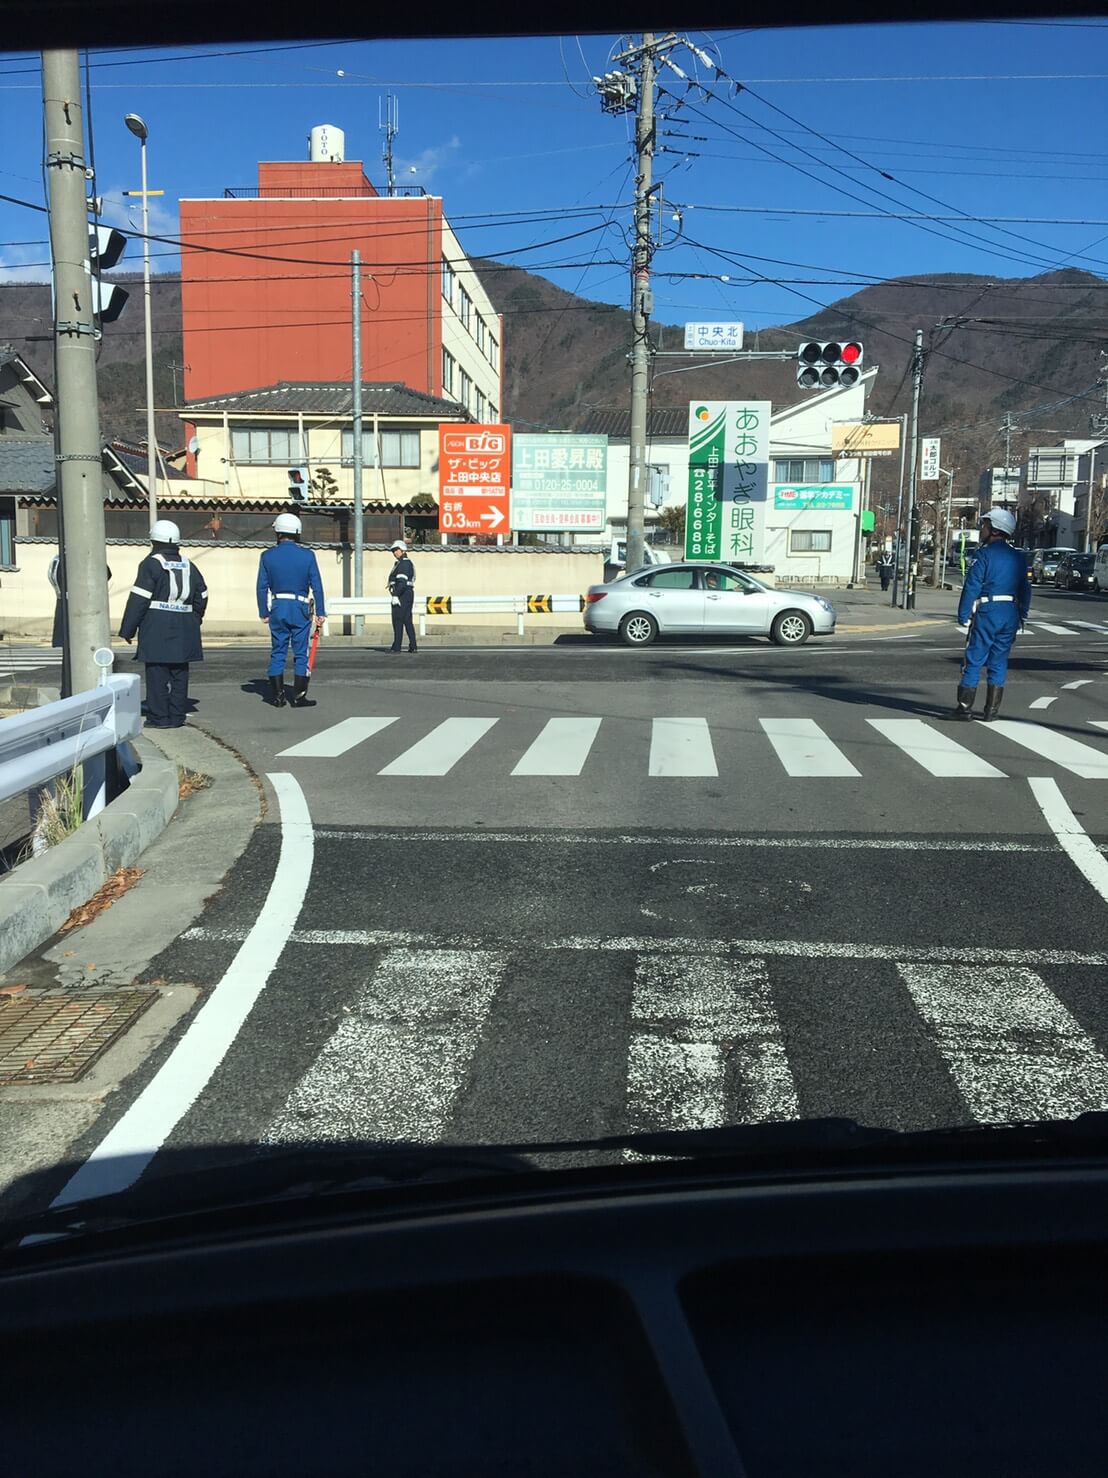 長野県で男女3人が死亡した悲劇の裏側…バットマンと呼ばれた暴力団幹部の暴走が原因かの画像1